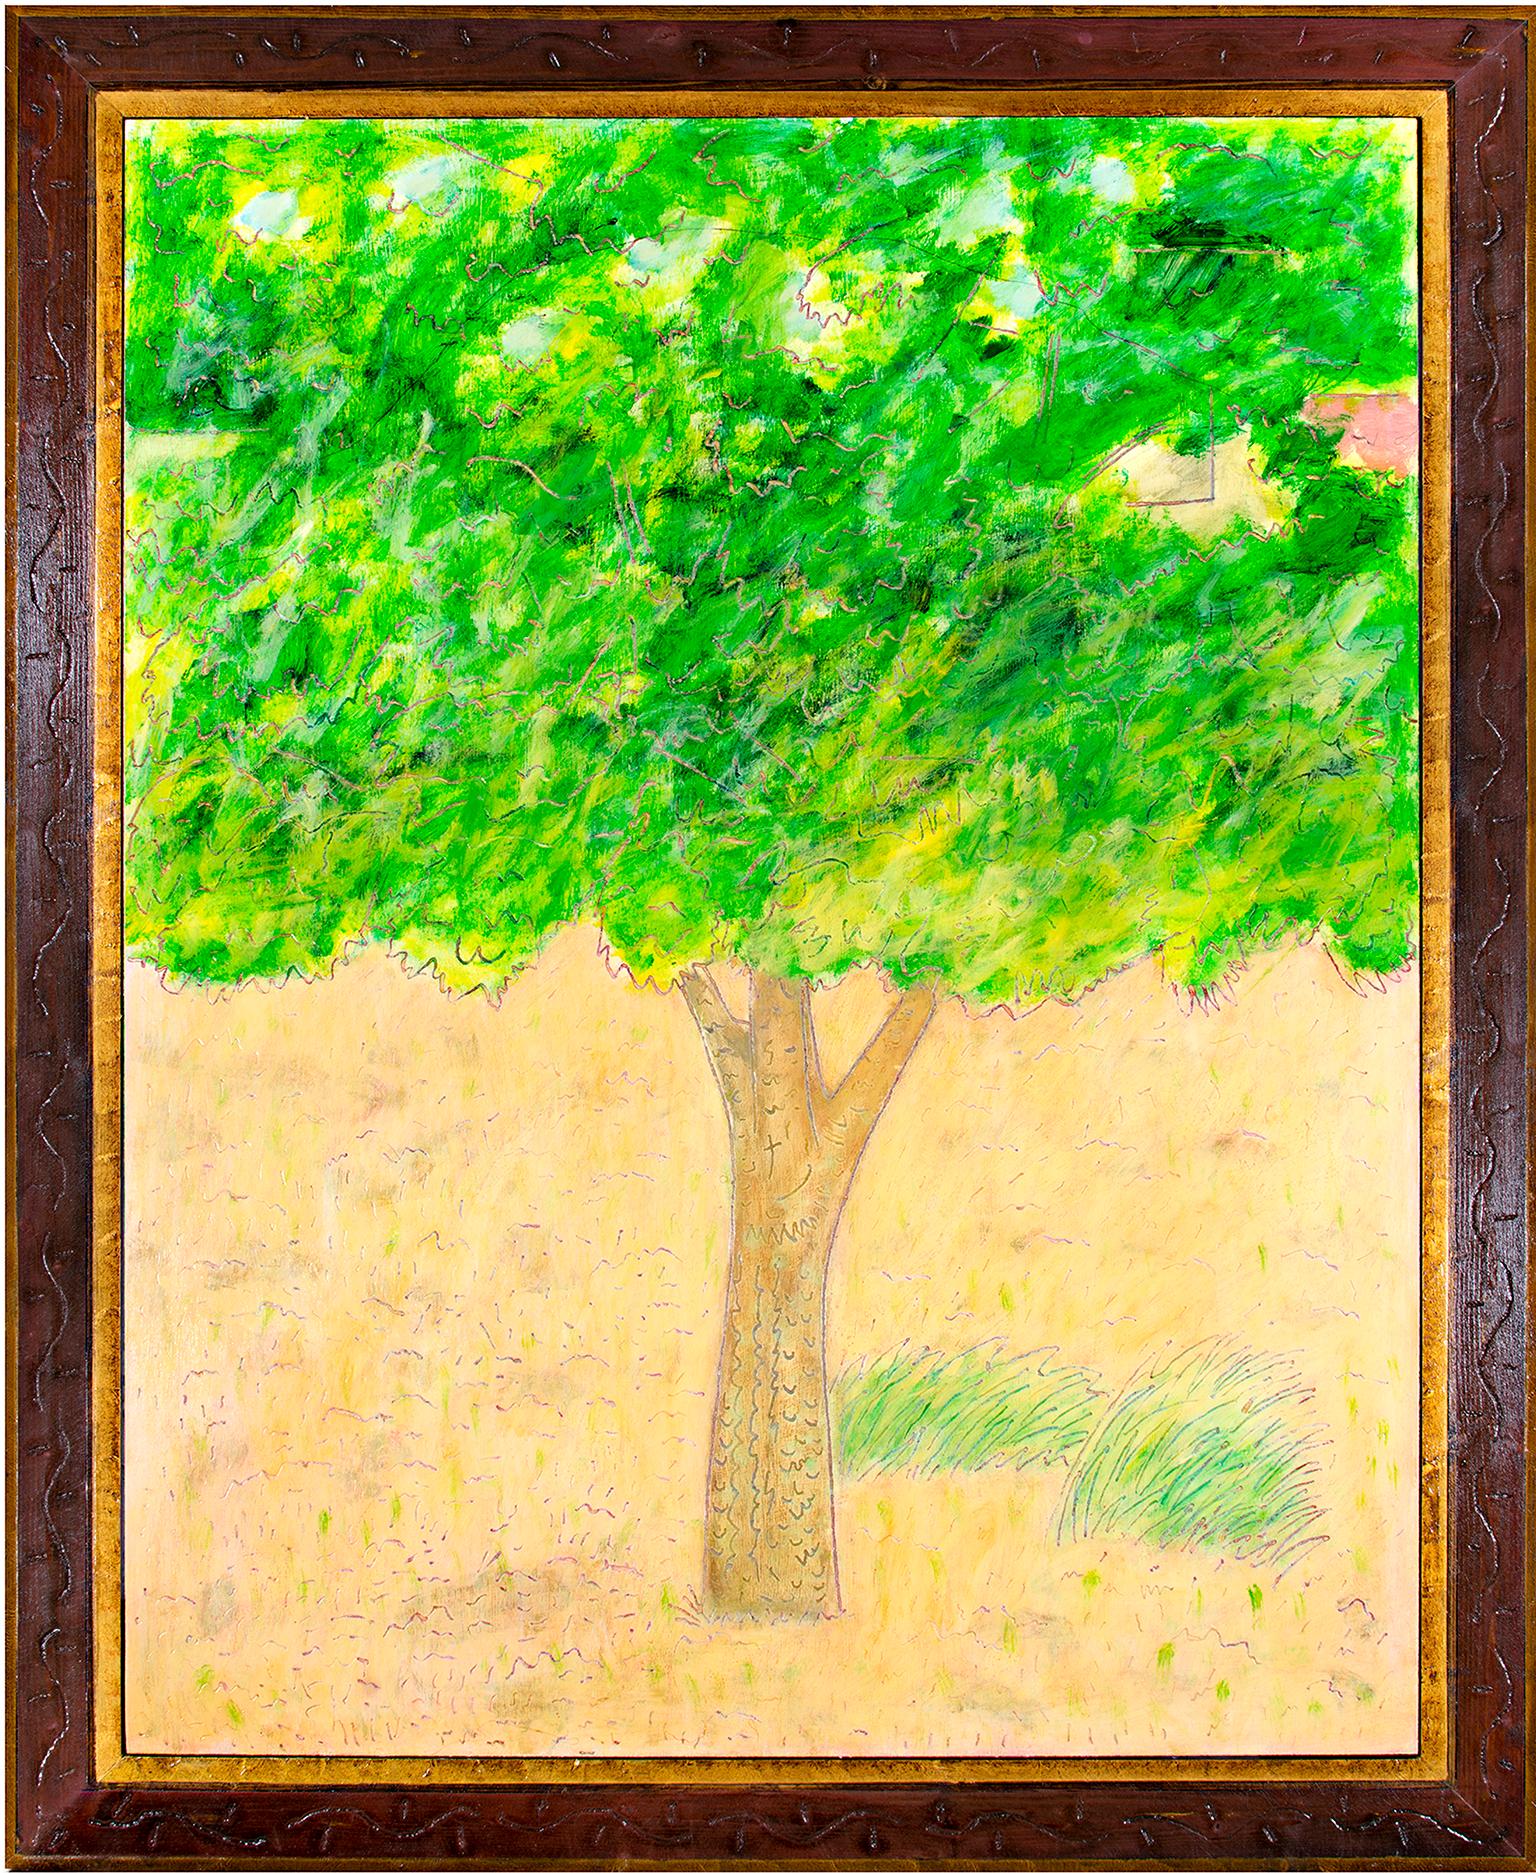 "Summer Grass" ist ein Original-Ölgemälde auf Holz des Künstlers Robert Richter aus Wisconsin, das auf der Rückseite signiert ist. Der Rahmen wurde von der Künstlerin handgeschnitzt und ist somit ein integraler Bestandteil des Wortes. Den größten